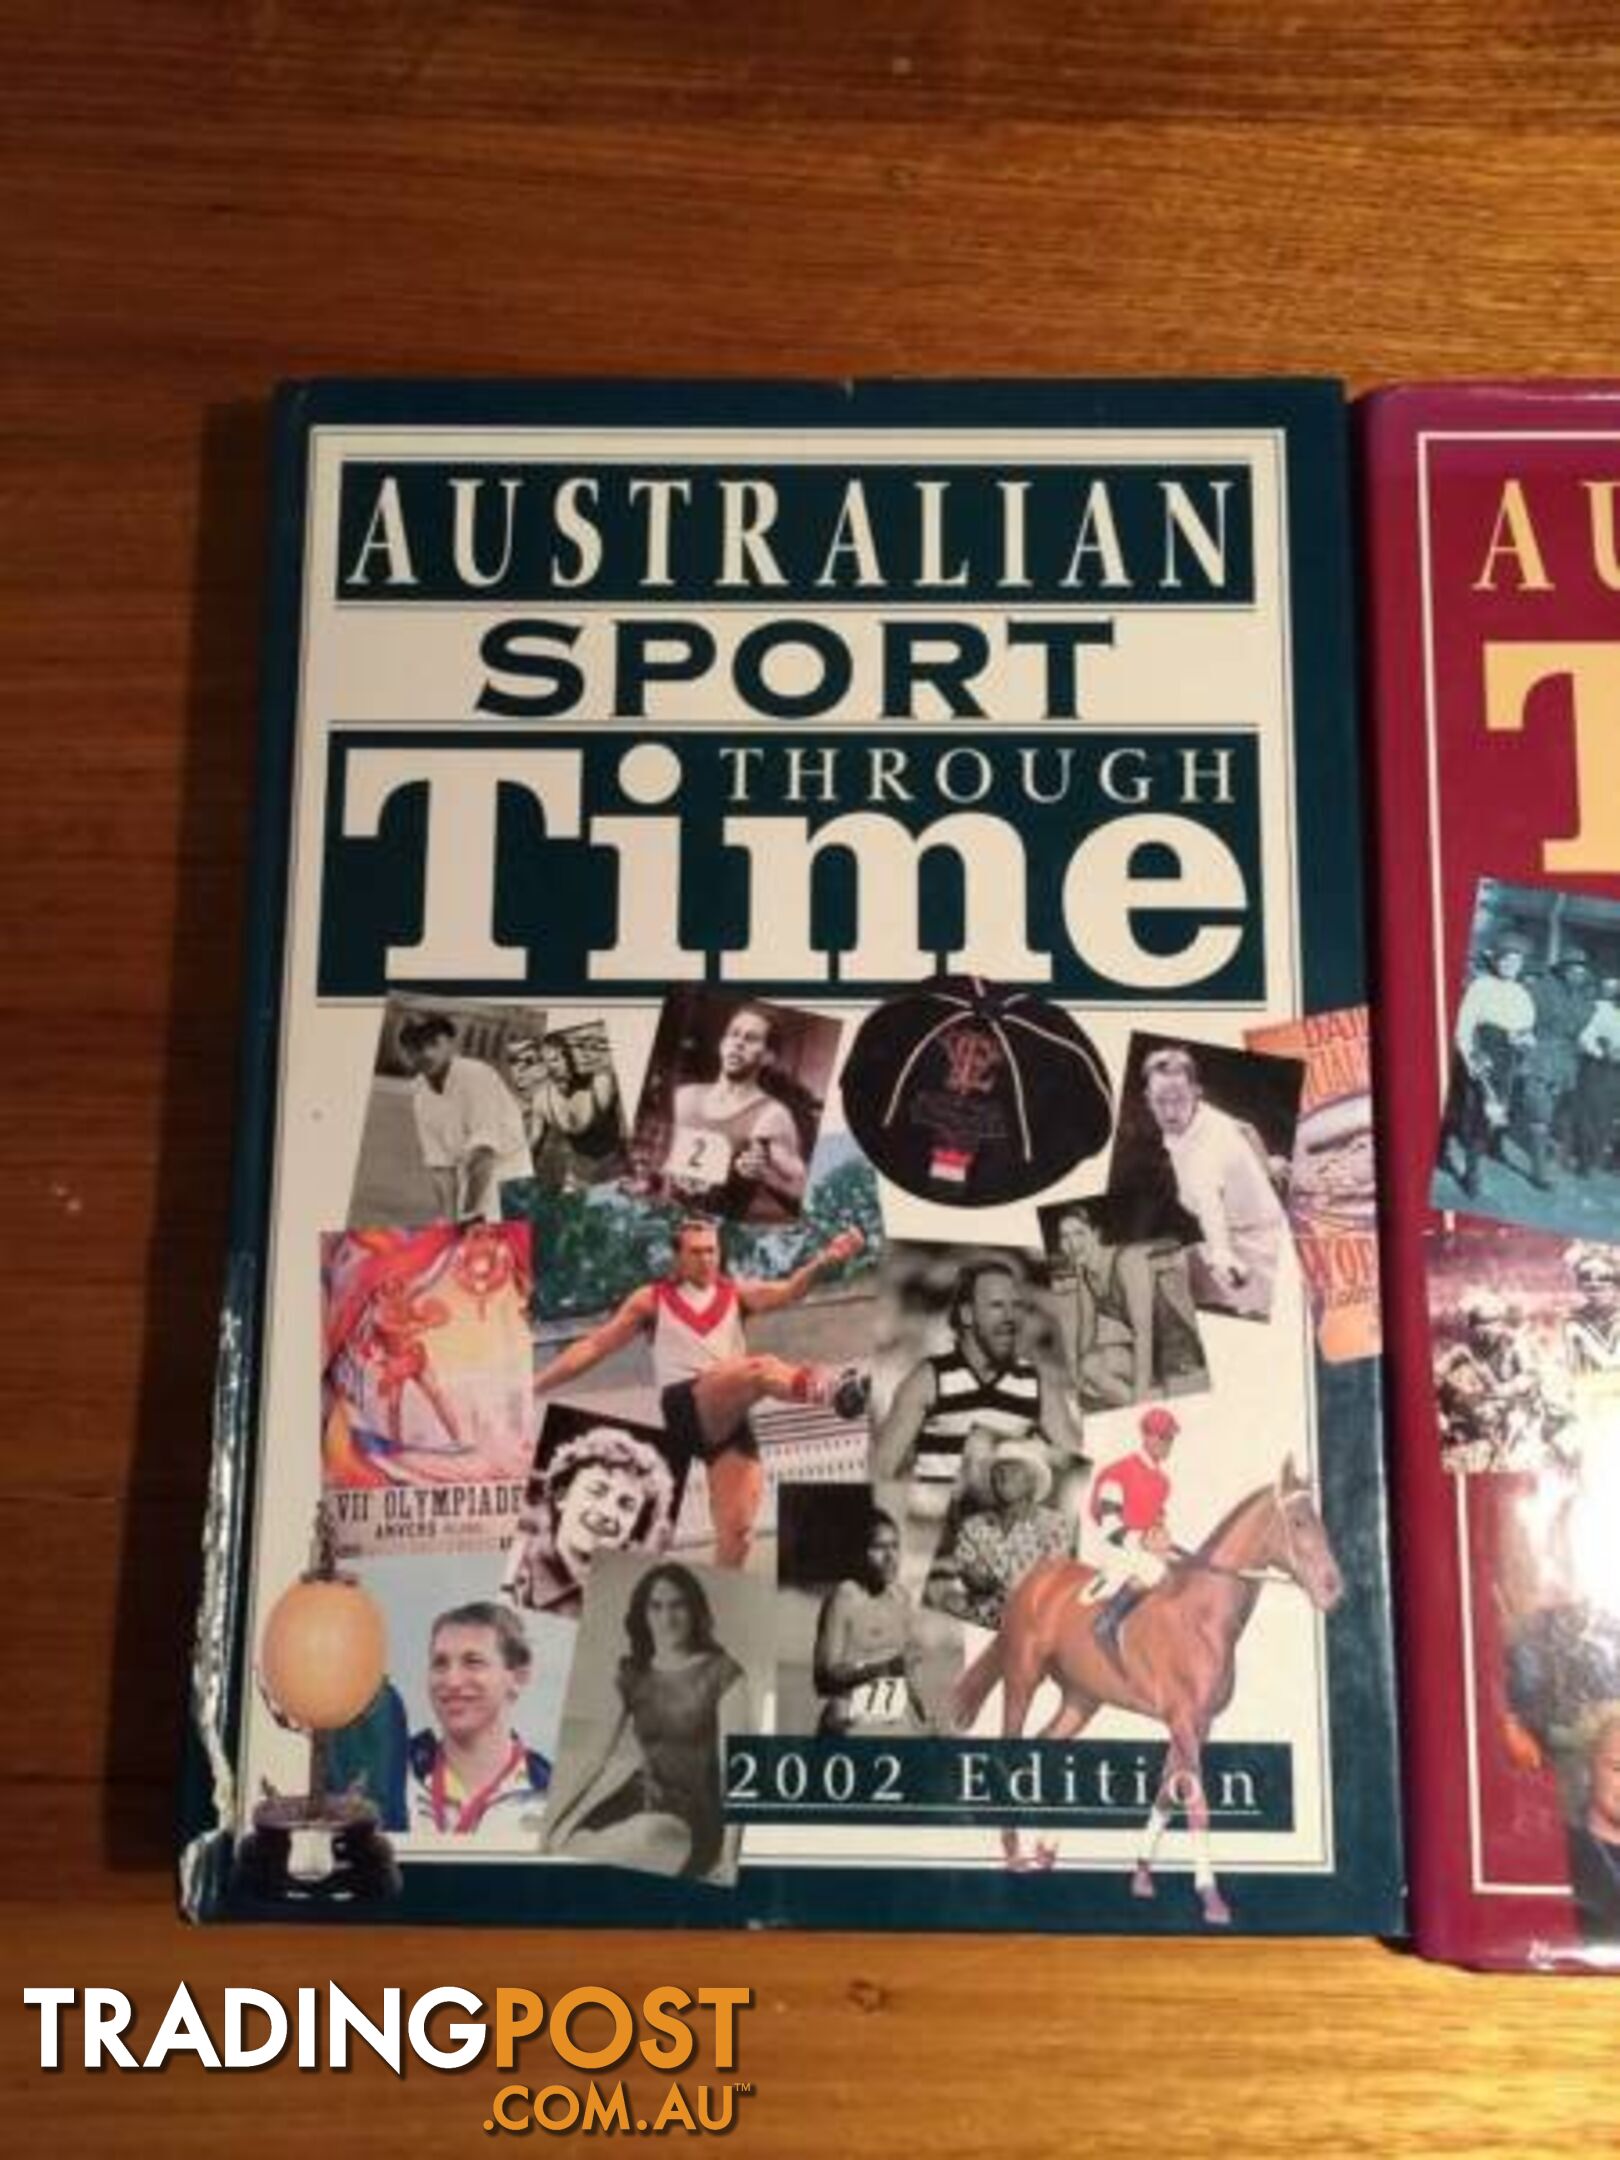 3 X AUSTRALIA THROUGH TIME BOOKS $20 FOR ALL 3